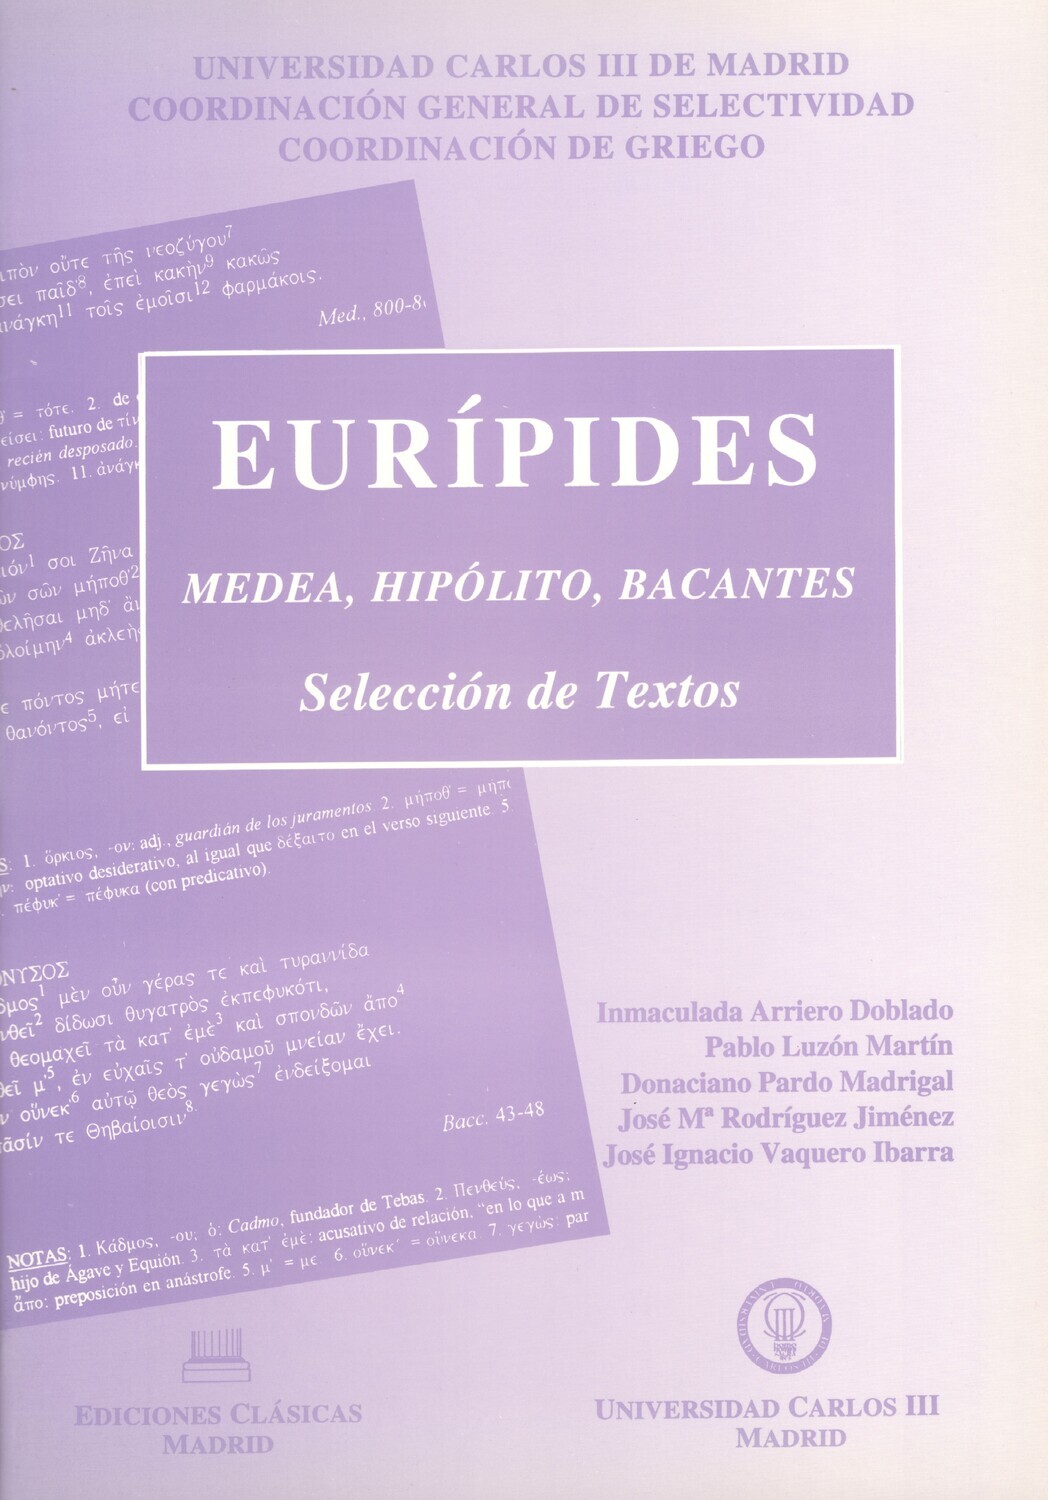 EURÍPIDES (MEDEA, HIPÓLITO, BACANTES), SELECCIÓN DE TEXTOS